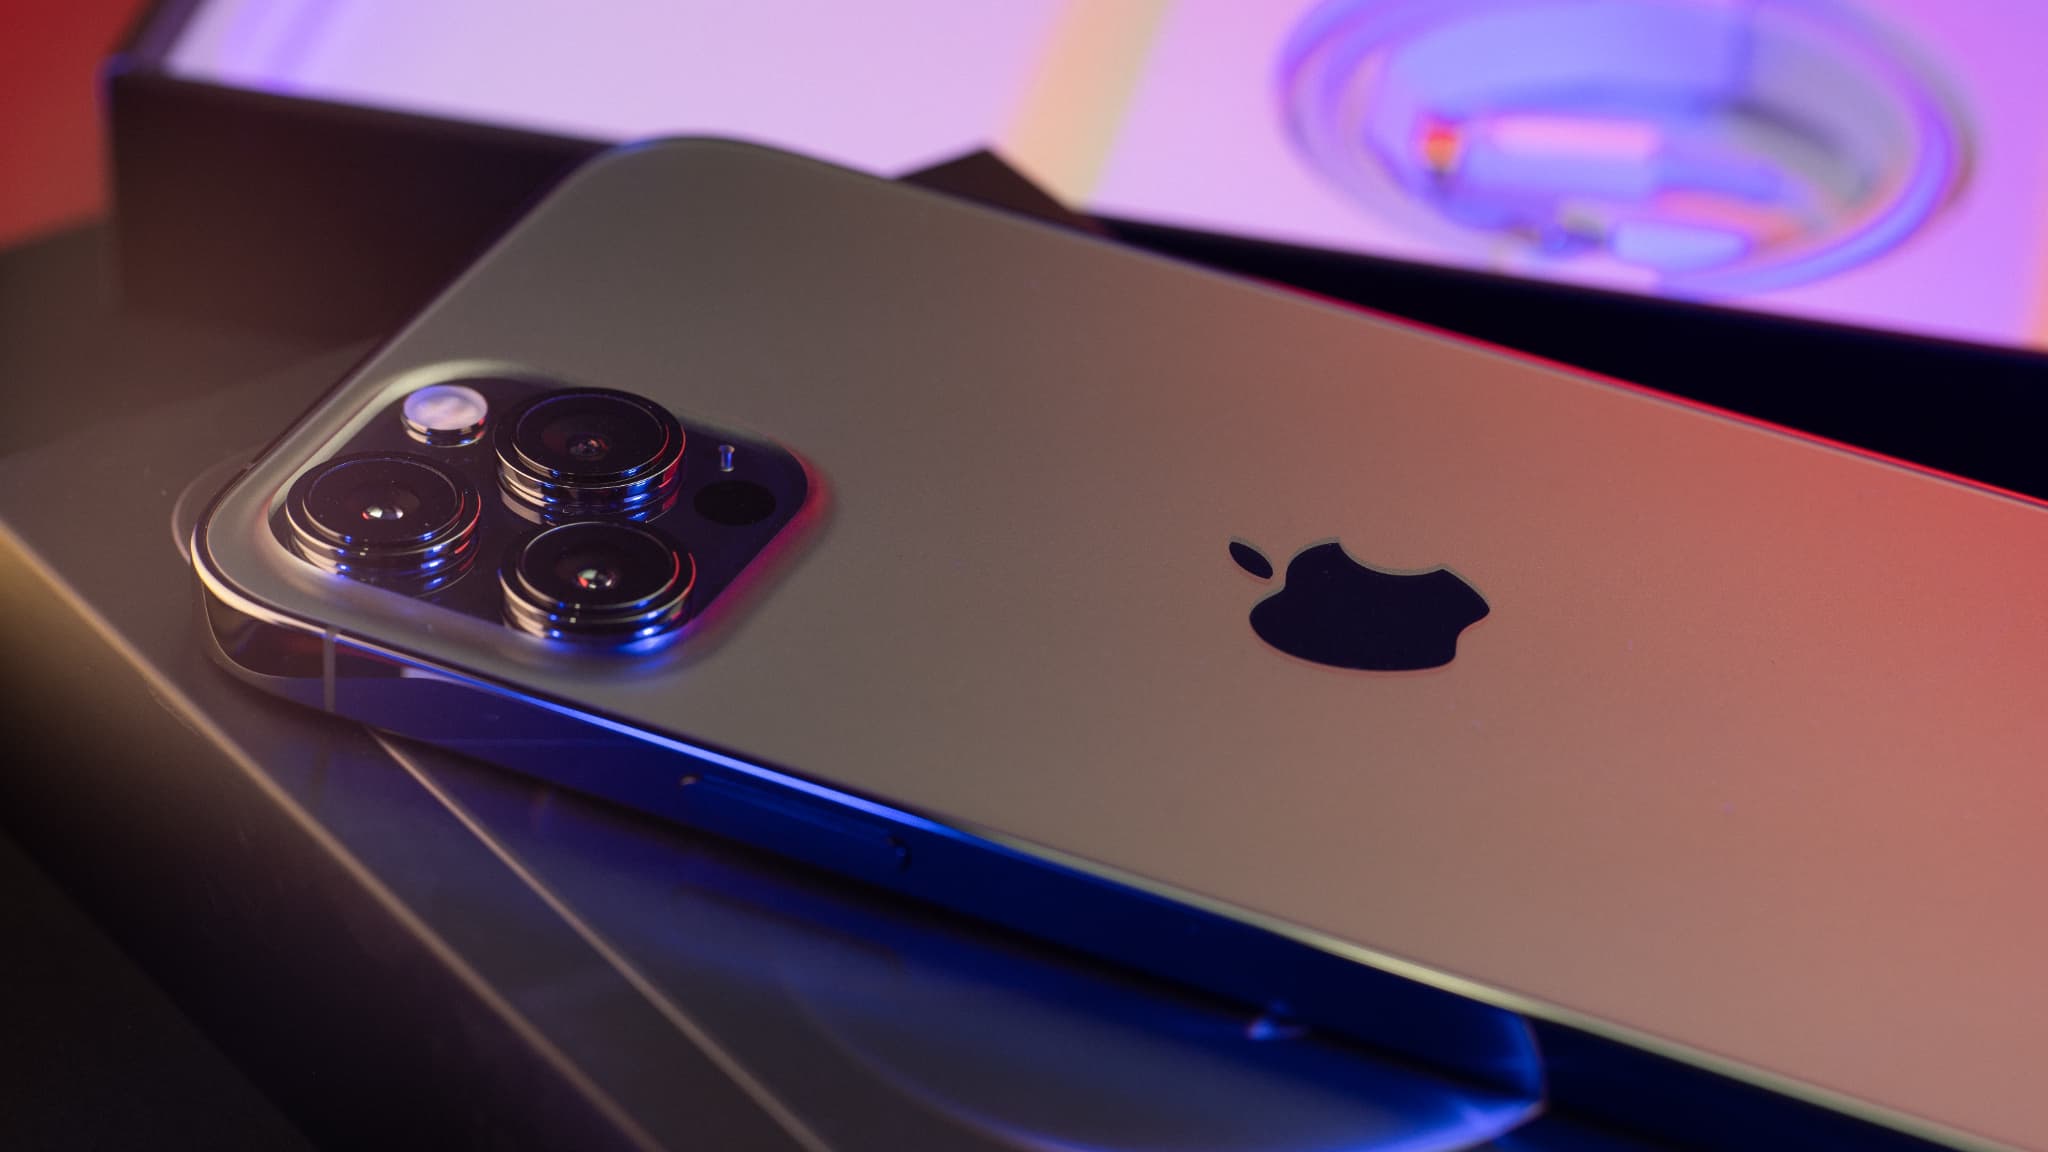 iPhone 12 Pro Max : le smartphone Apple ultrapuissant enfin en